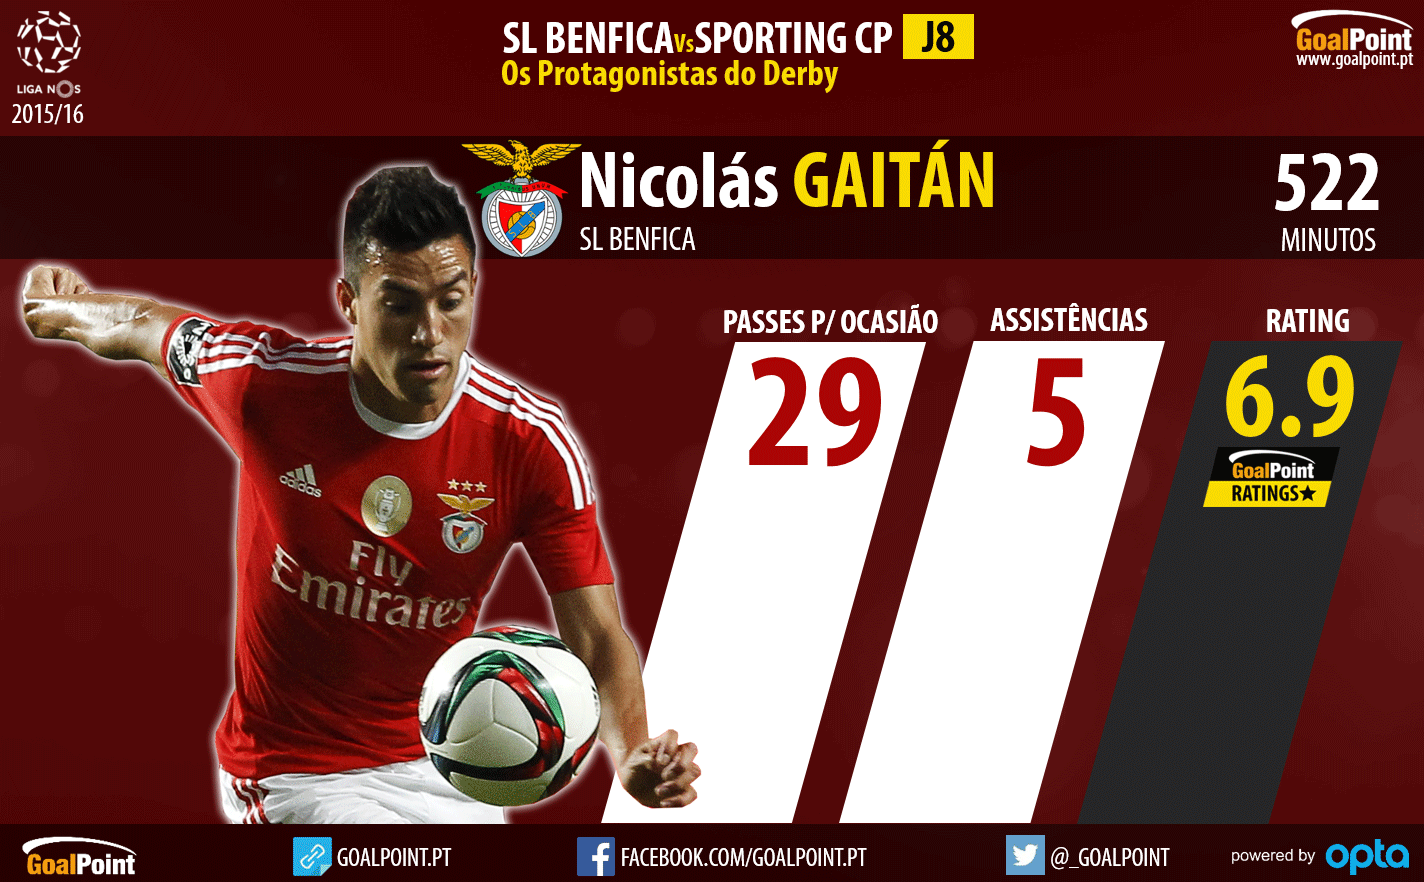 Benfica - Sporting Liga NOS 2015/16 - As figuras que podem fazer a diferença - Gaitán